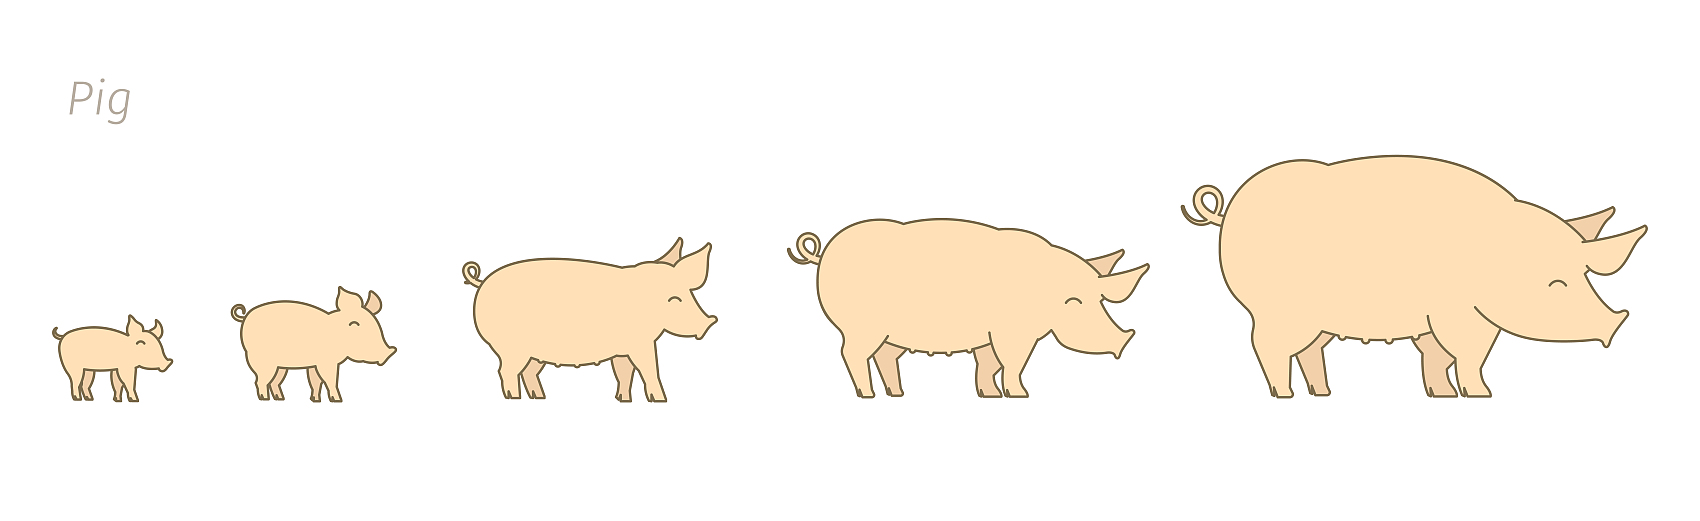 Porcos em diferentes estágios de crescimento